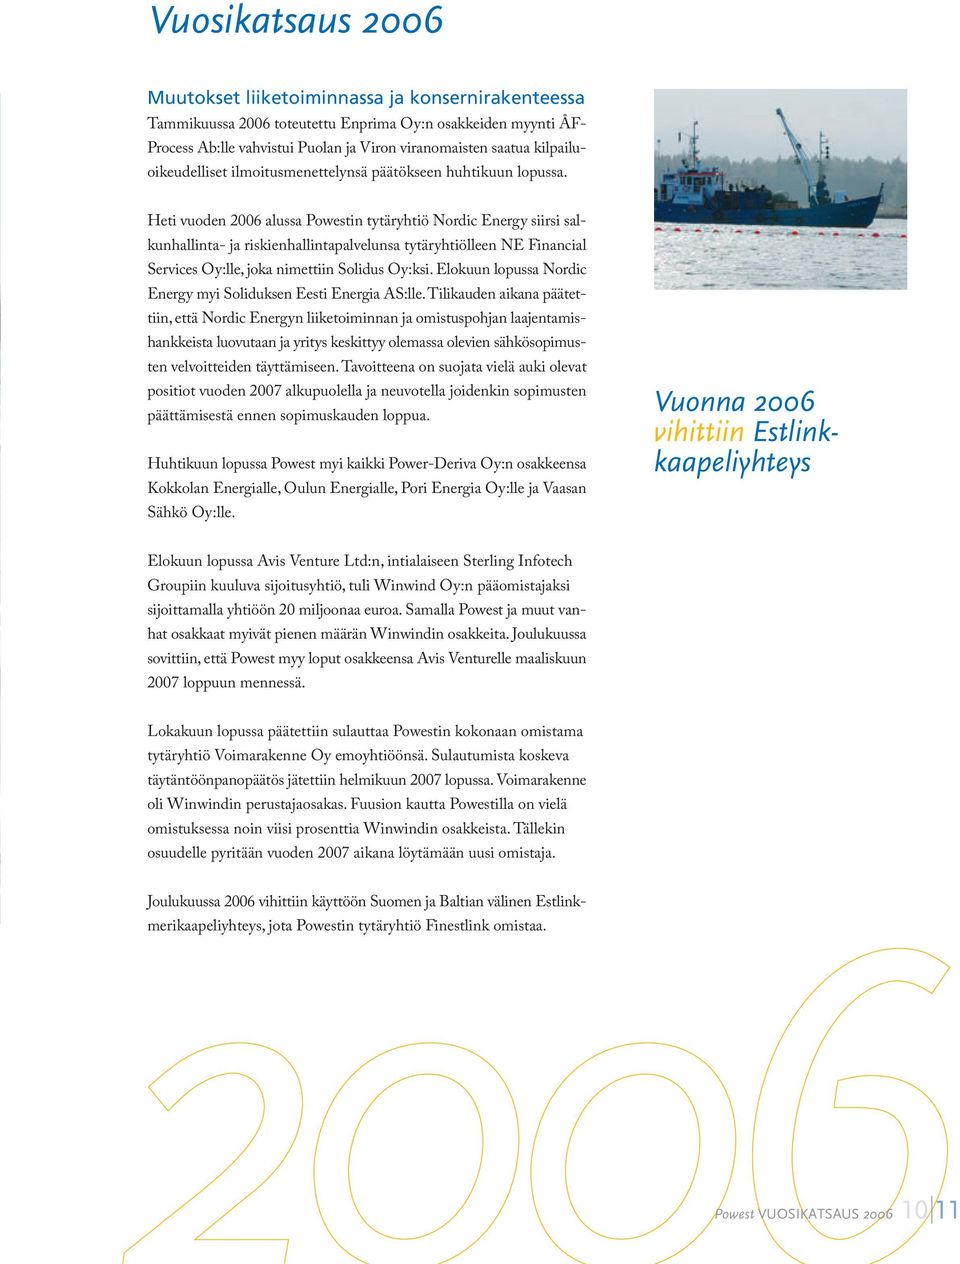 Heti vuoden 2006 alussa Powestin tytäryhtiö Nordic Energy siirsi salkunhallinta- ja riskienhallintapalvelunsa tytäryhtiölleen NE Financial Services Oy:lle, joka nimettiin Solidus Oy:ksi.